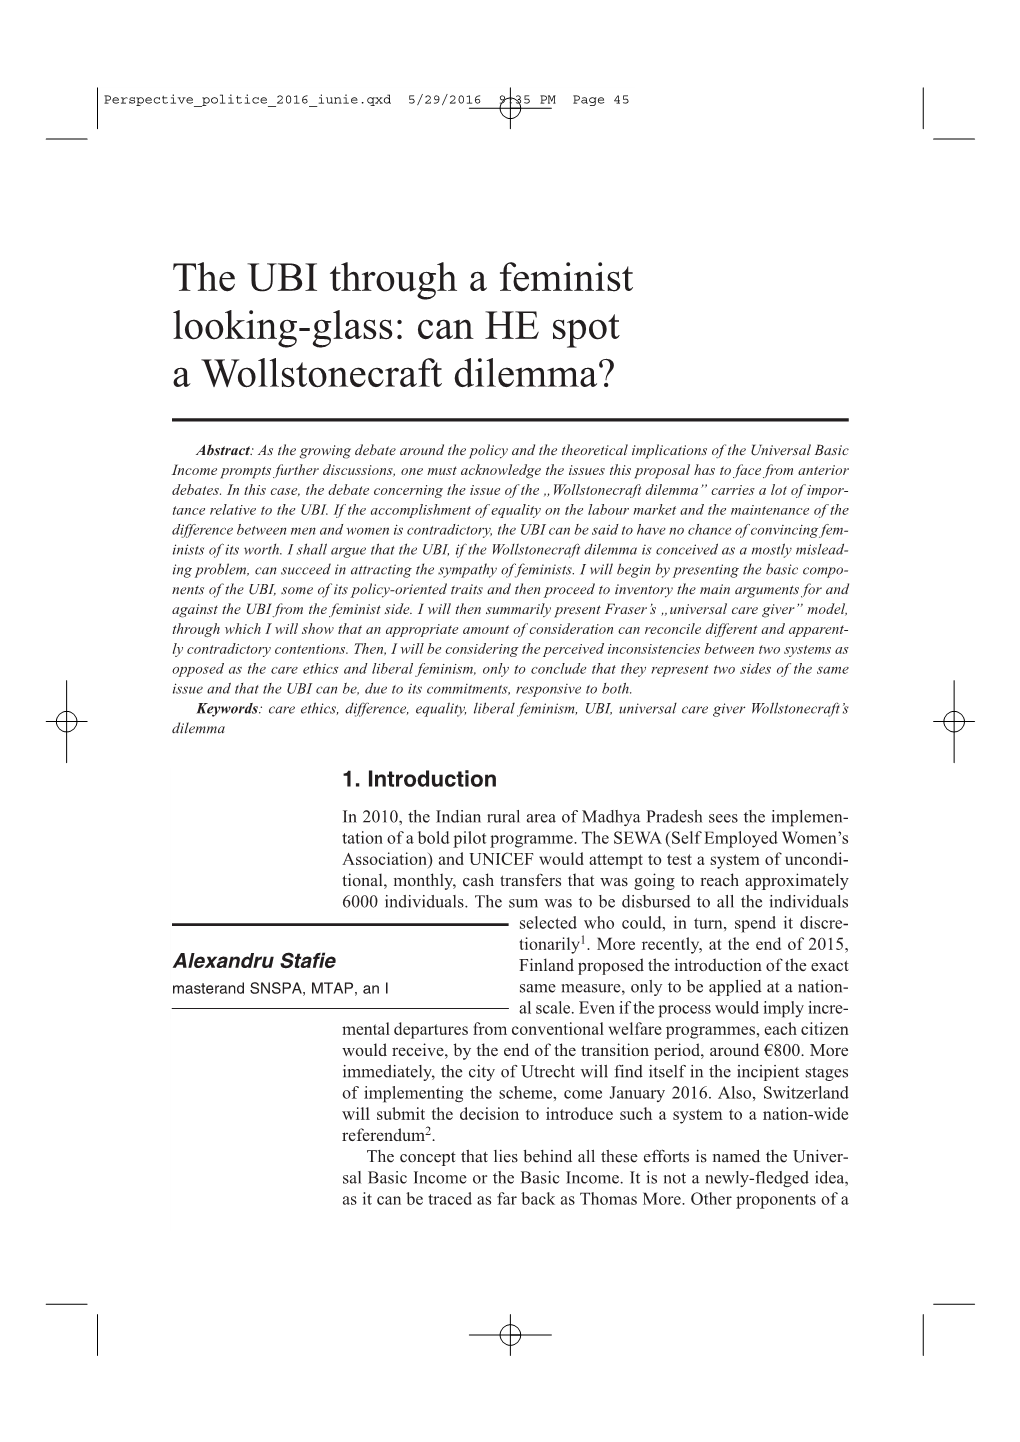 The UBI Through a Feminist Looking-Glass: Can HE Spot a Wollstonecraft Dilemma?